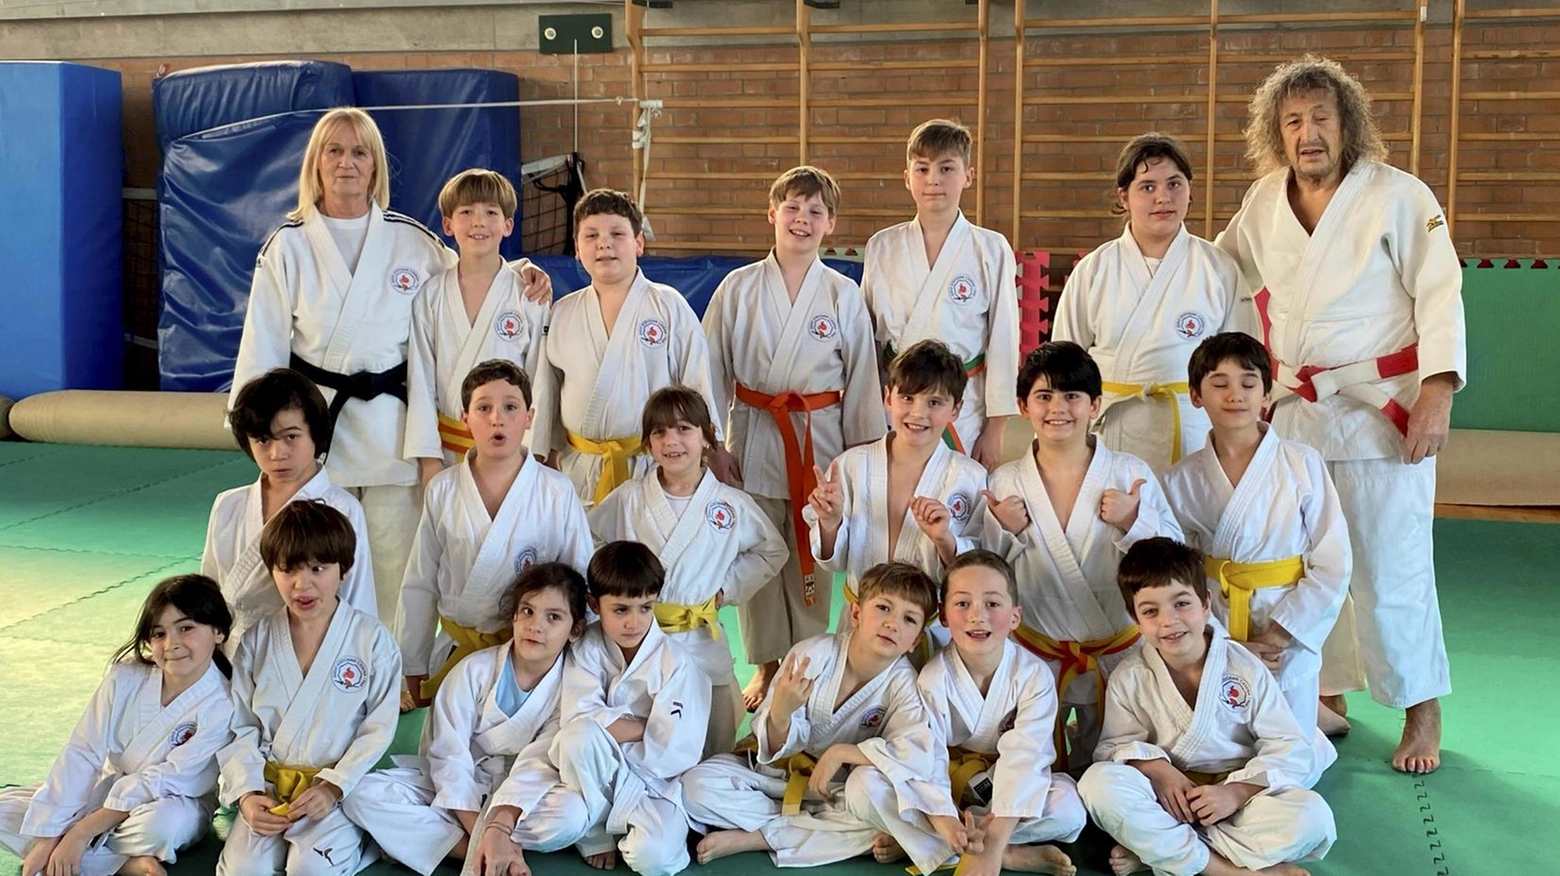 Al trofeo regionale di judo organizzato in Emilia hanno partecipato venti giovani atleti alle prese con le prima apparizioni sul tatami